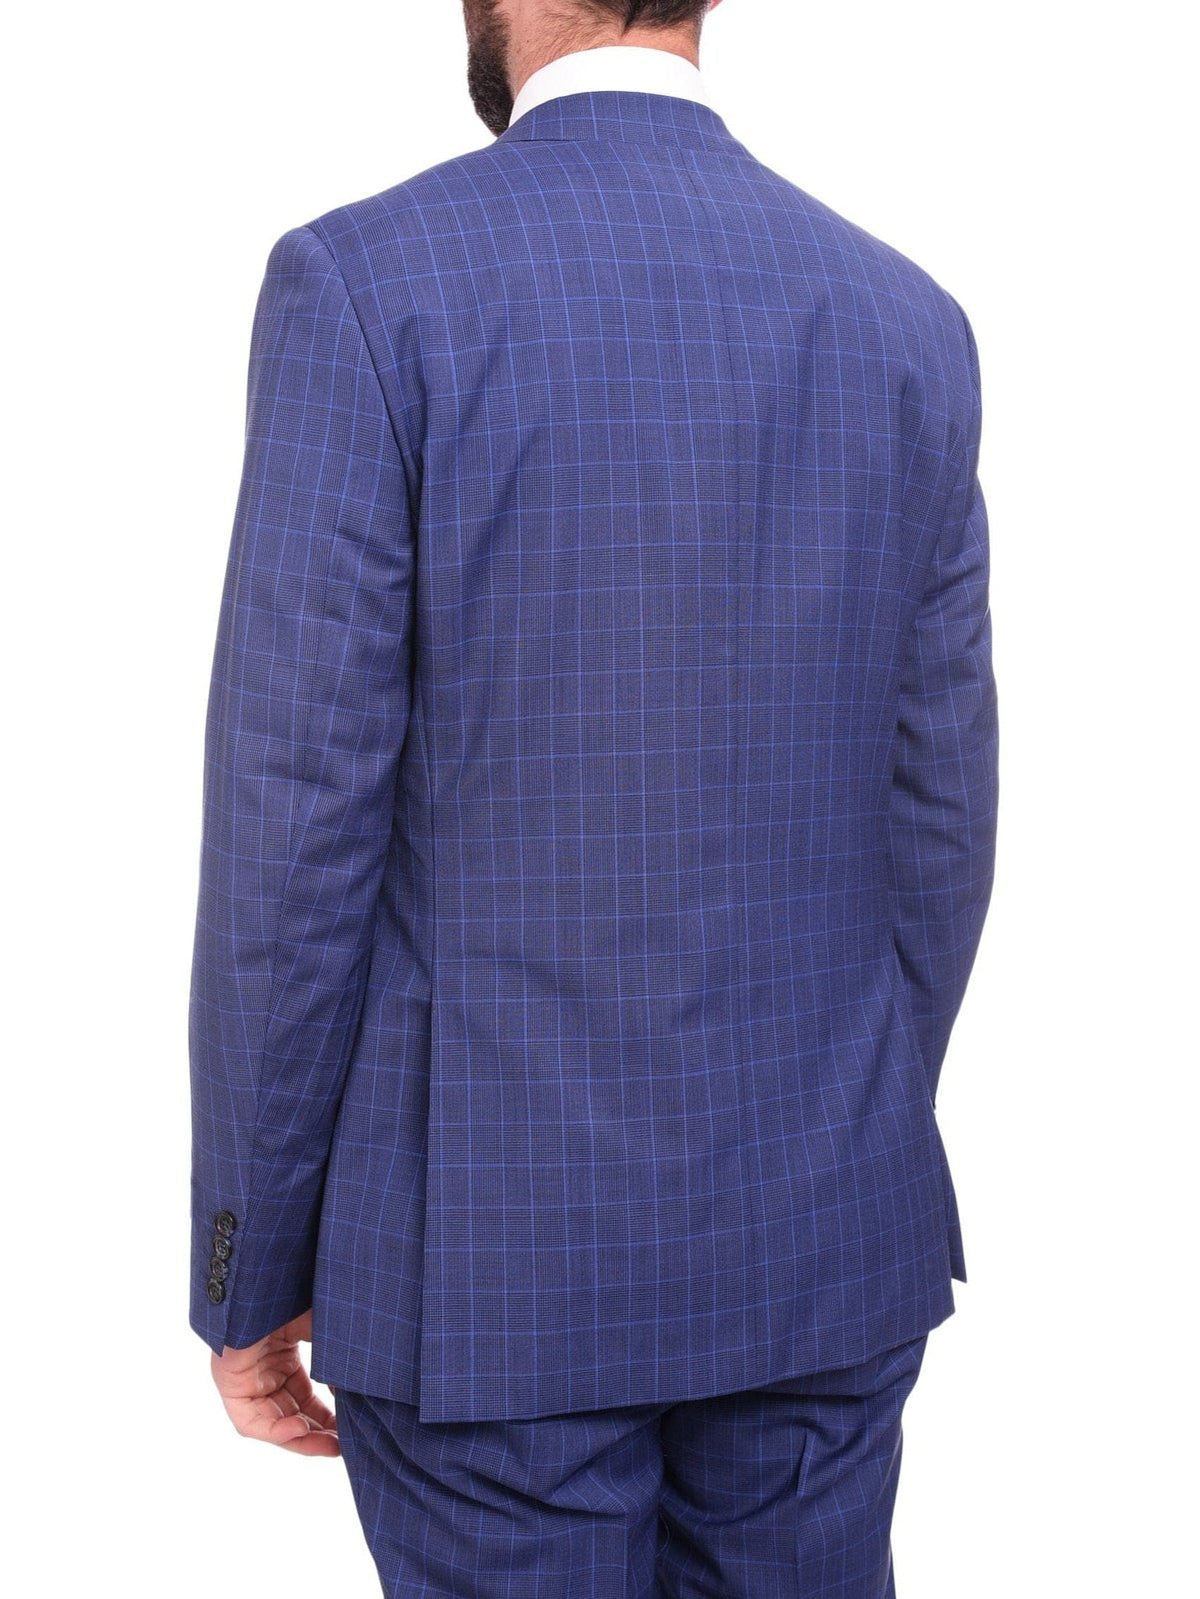 Napoli TWO PIECE SUITS Men&#39;s Napoli Slim Fit Blue Glen Plaid 2 Button Super 150s 100% Italian Wool Suit